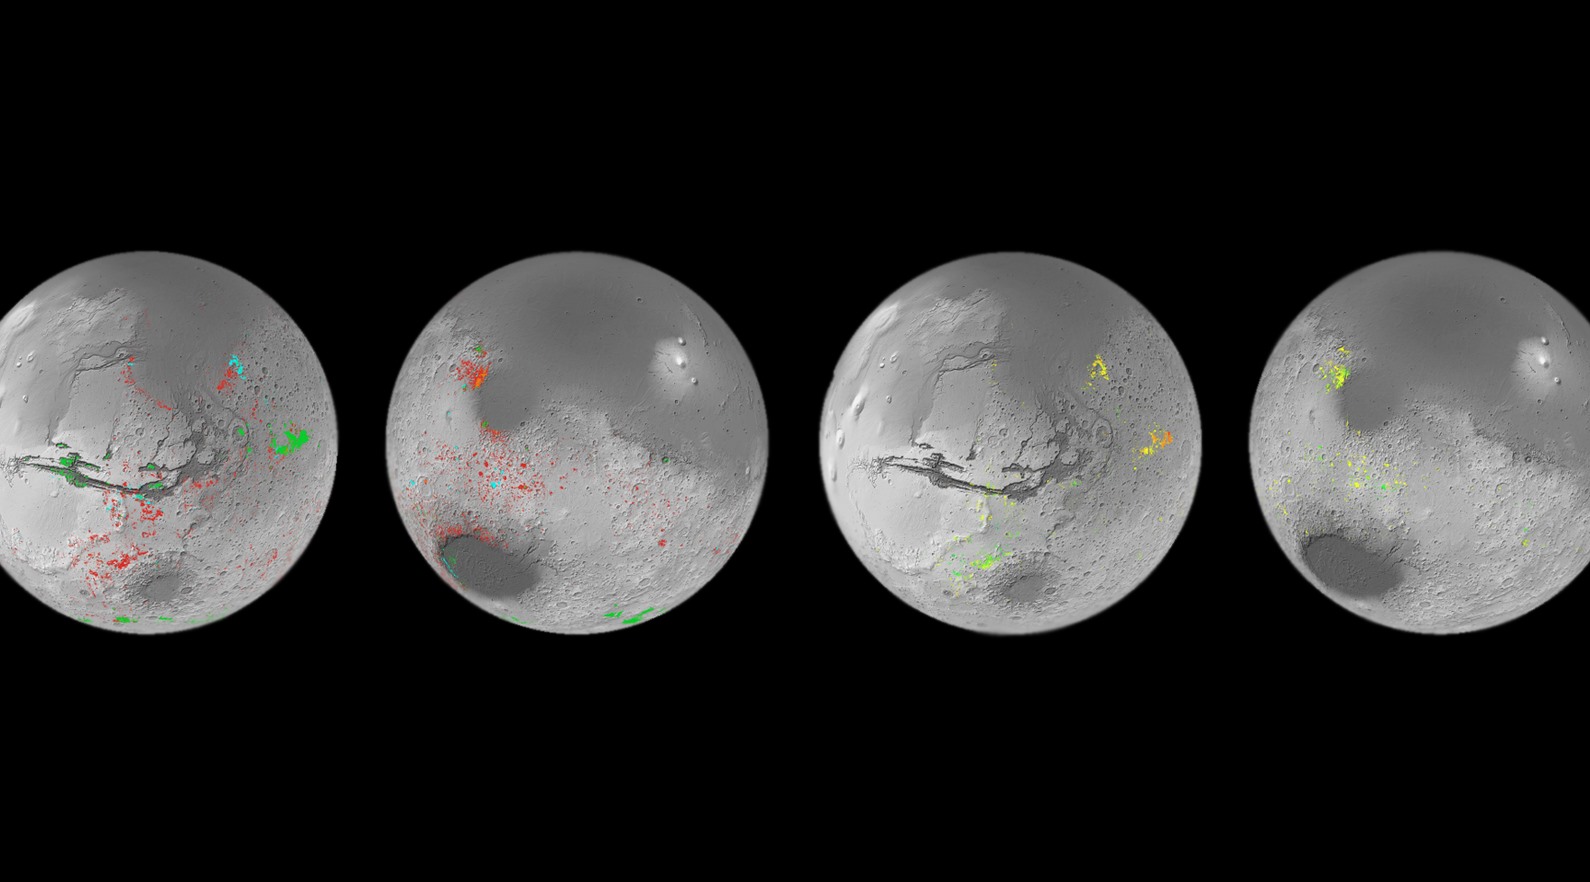 Bản đồ các mỏ khoáng sản ngậm nước trên sao Hỏa. Màu xanh lá cây tượng trưng cho các sunphat ngậm nước; màu đỏ là đất sét ngậm nước; màu da cam là muối cacbonat; và màu xanh lam là đất sét silic và aluminosilicat ngậm nước. Ảnh: ESA